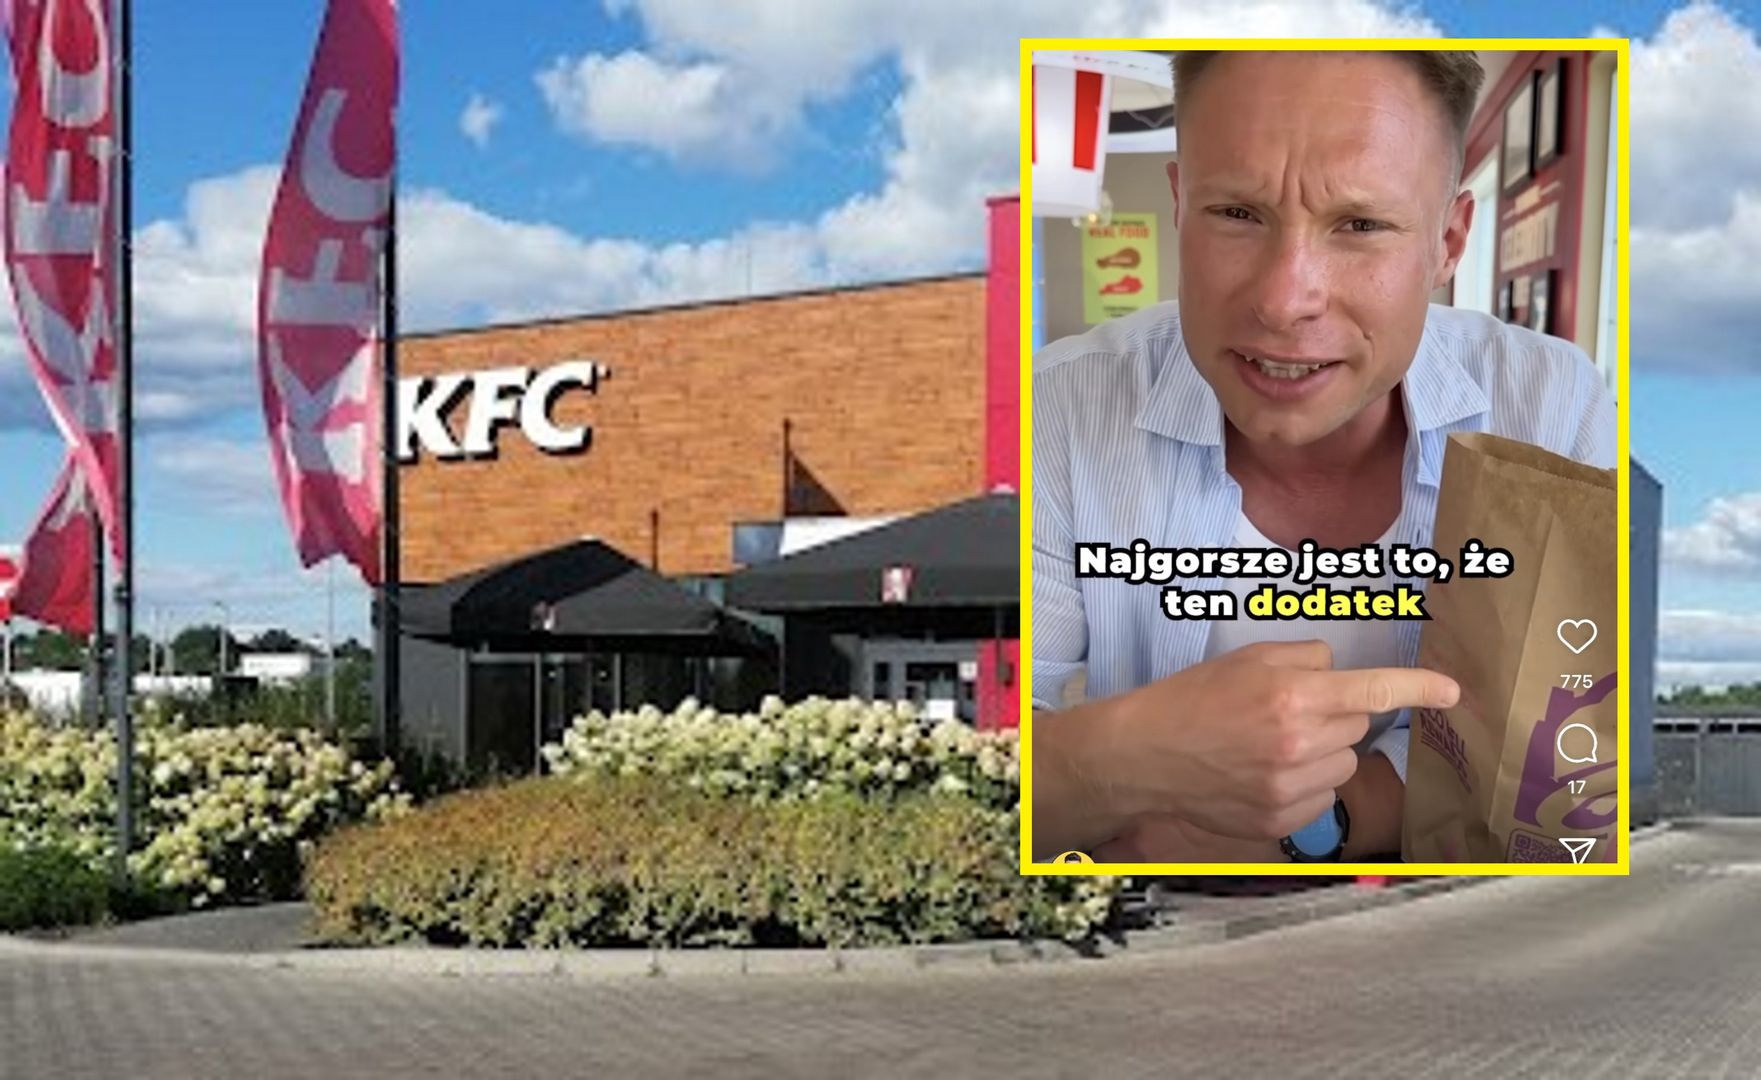 Polski dietetyk poszedł do KFC w USA. Aż złapał się za głowę